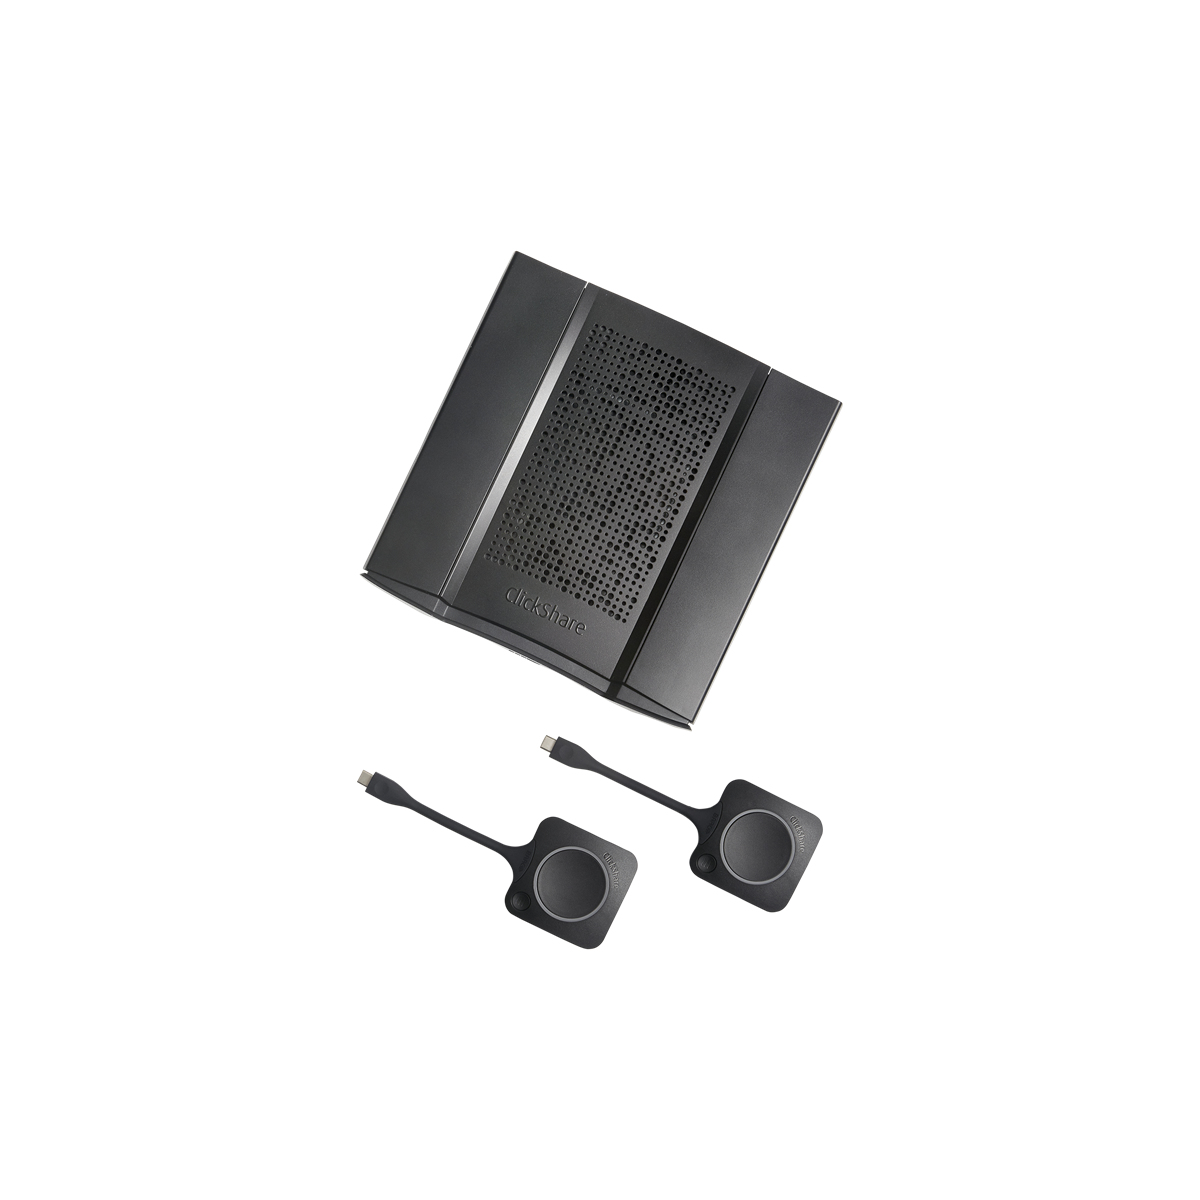 Photos - Headphones Barco ClickShare CX-50 wireless presentation system HDMI Desktop R9861522E 